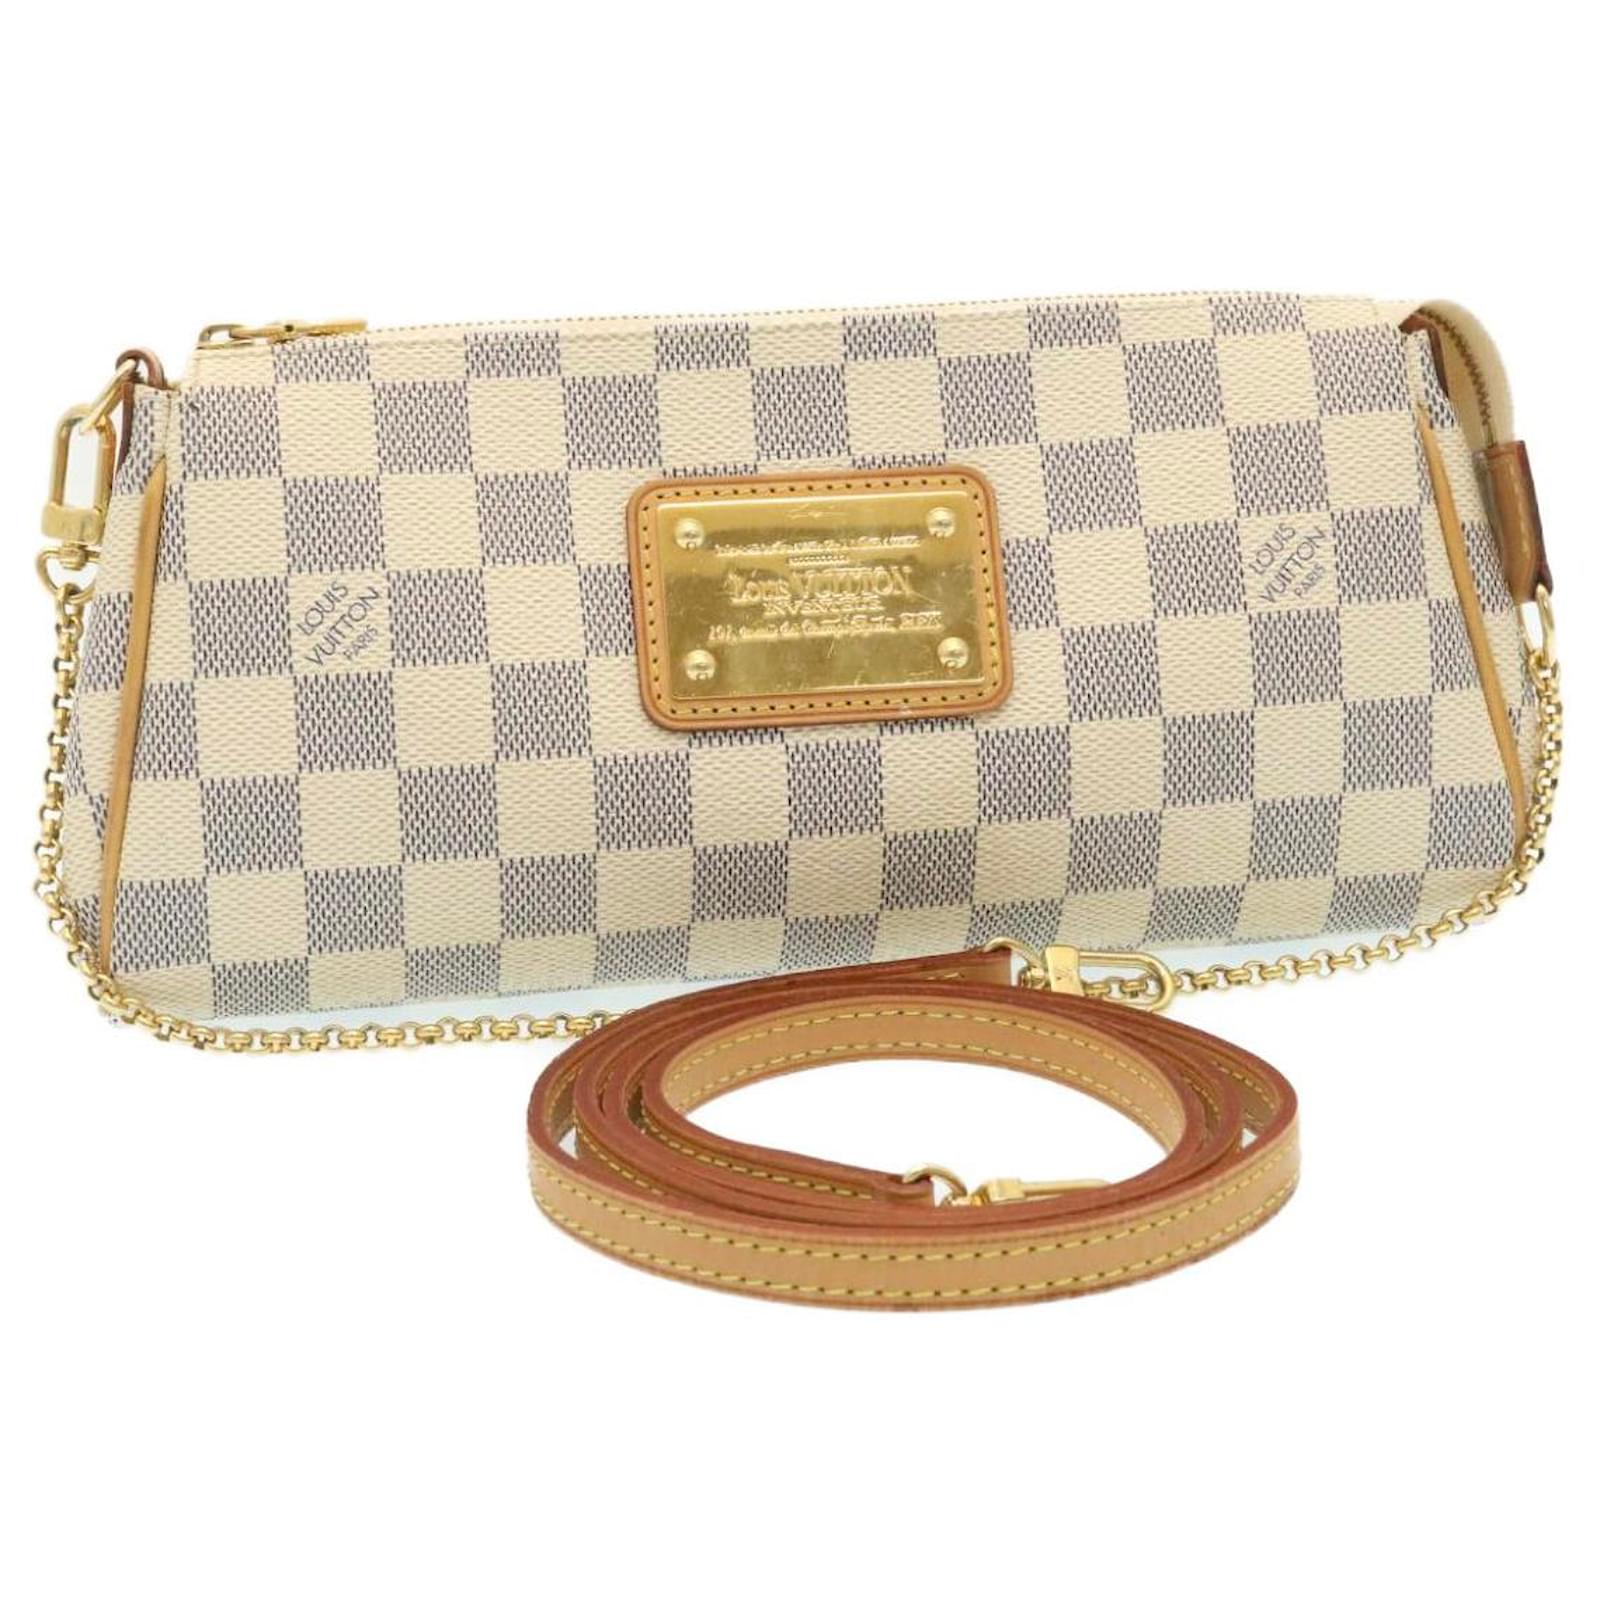 Handbags Louis Vuitton Louis Vuitton Damier Azur Eva 2way Shoulder Bag N55214 LV Auth hs785a